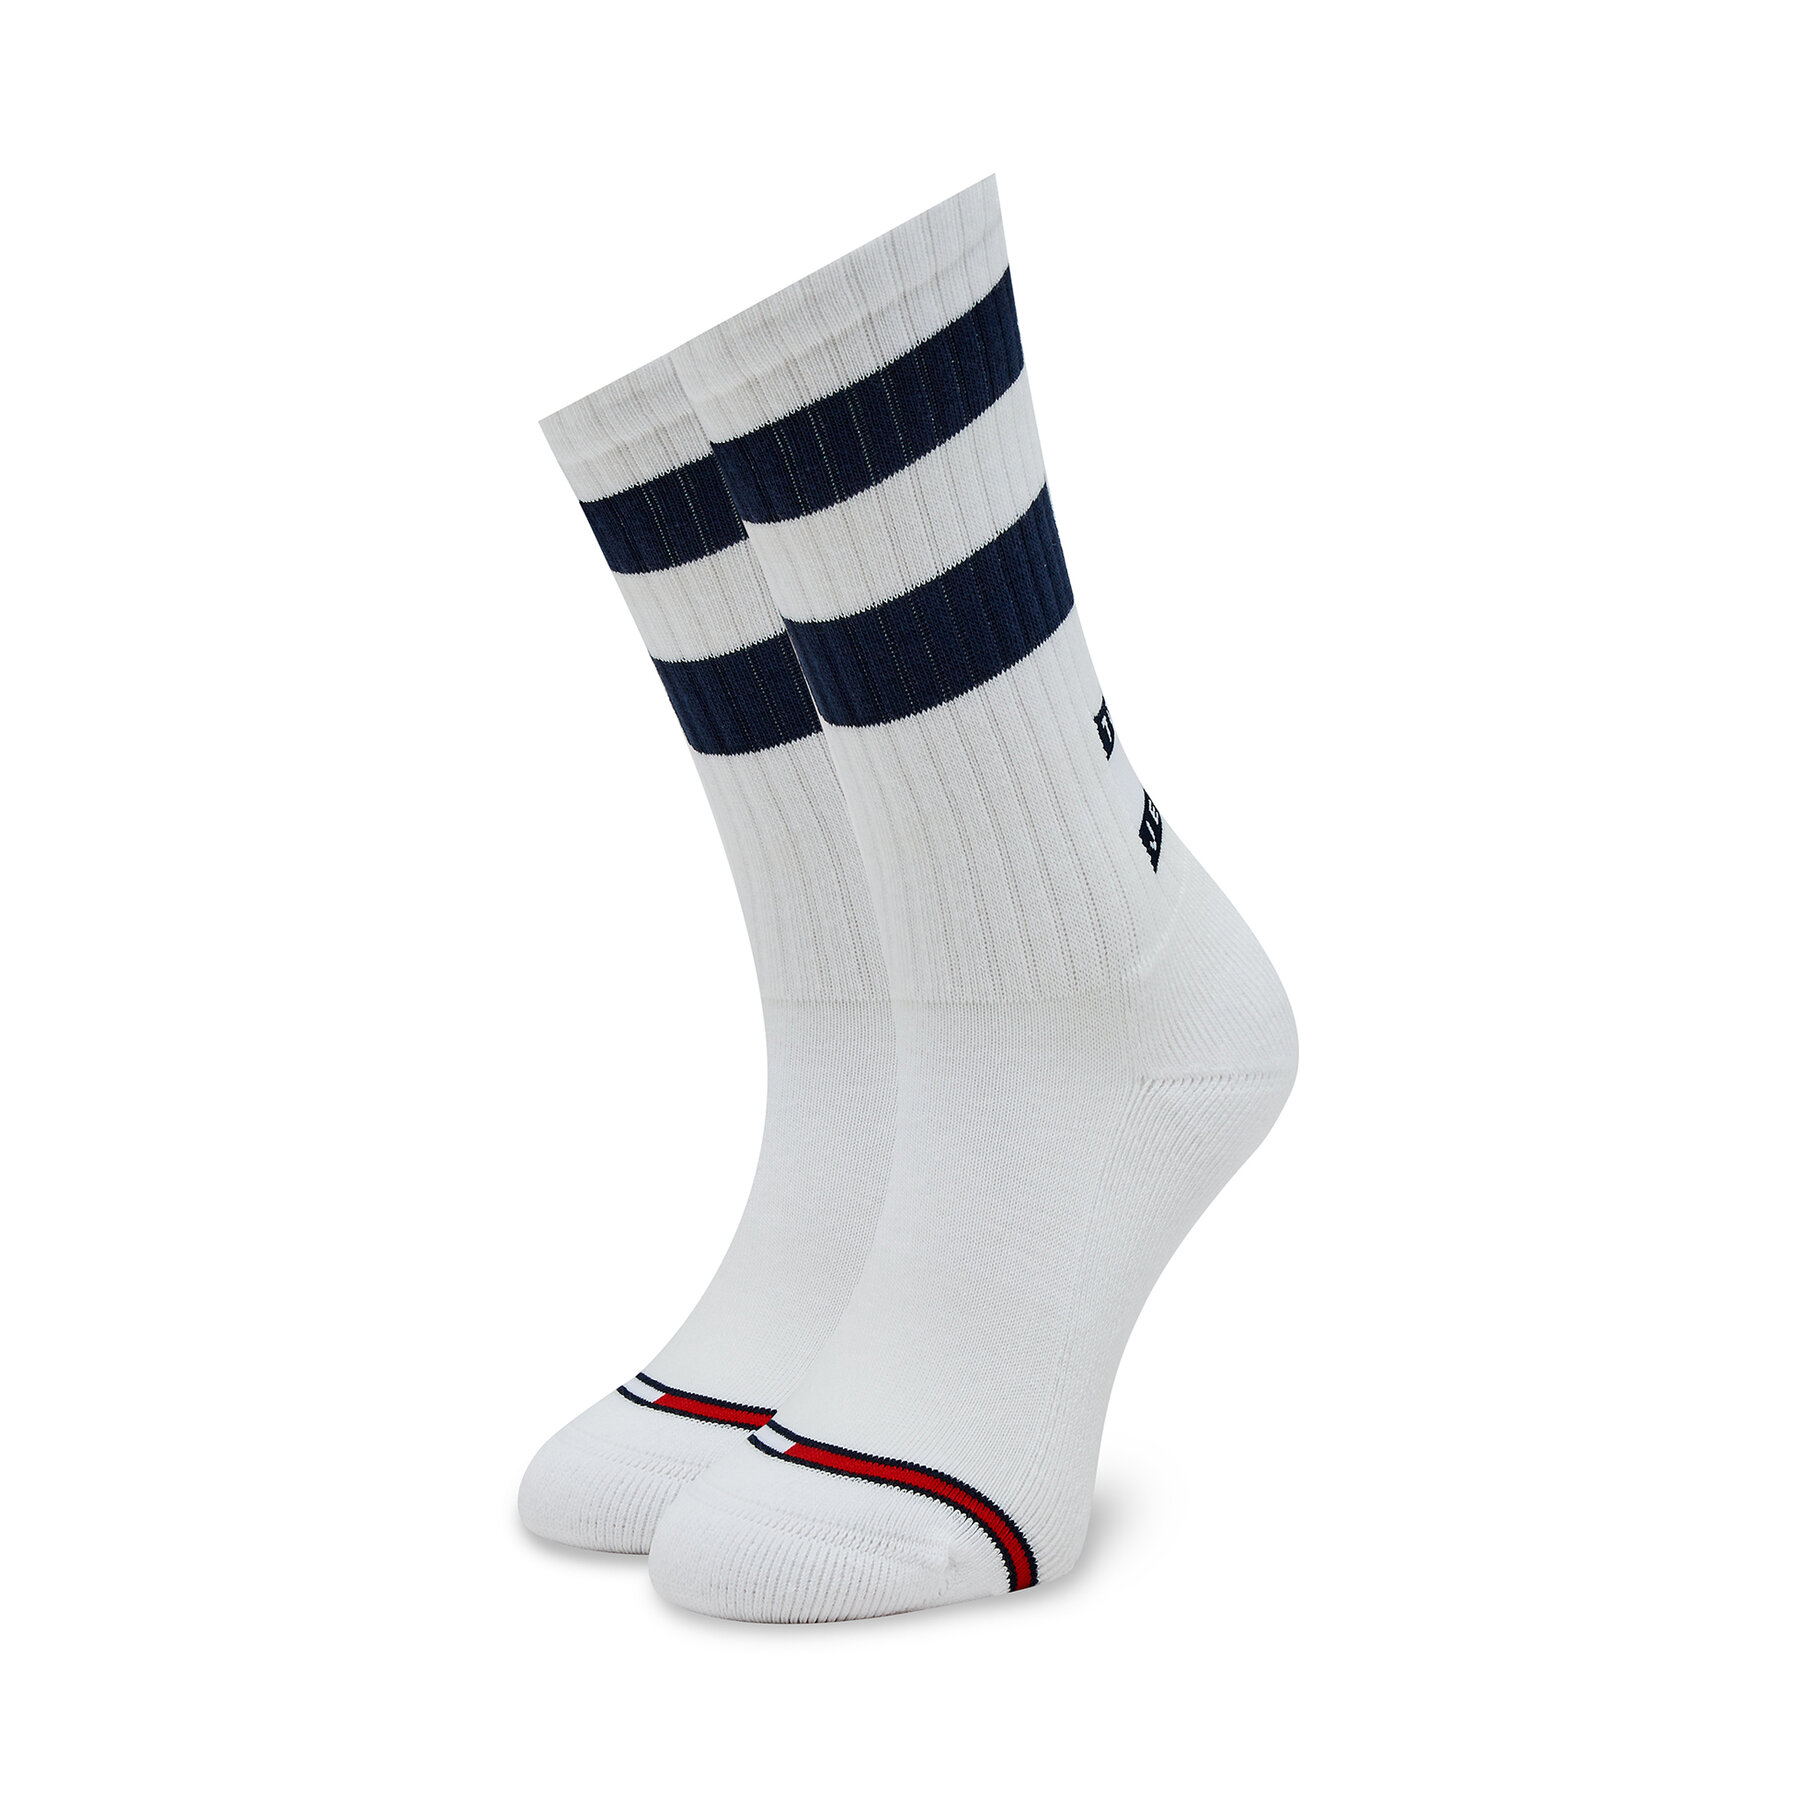 Hohe Unisex-Socken Tommy Hilfiger 701225510 White/Navy 001 von Tommy Hilfiger